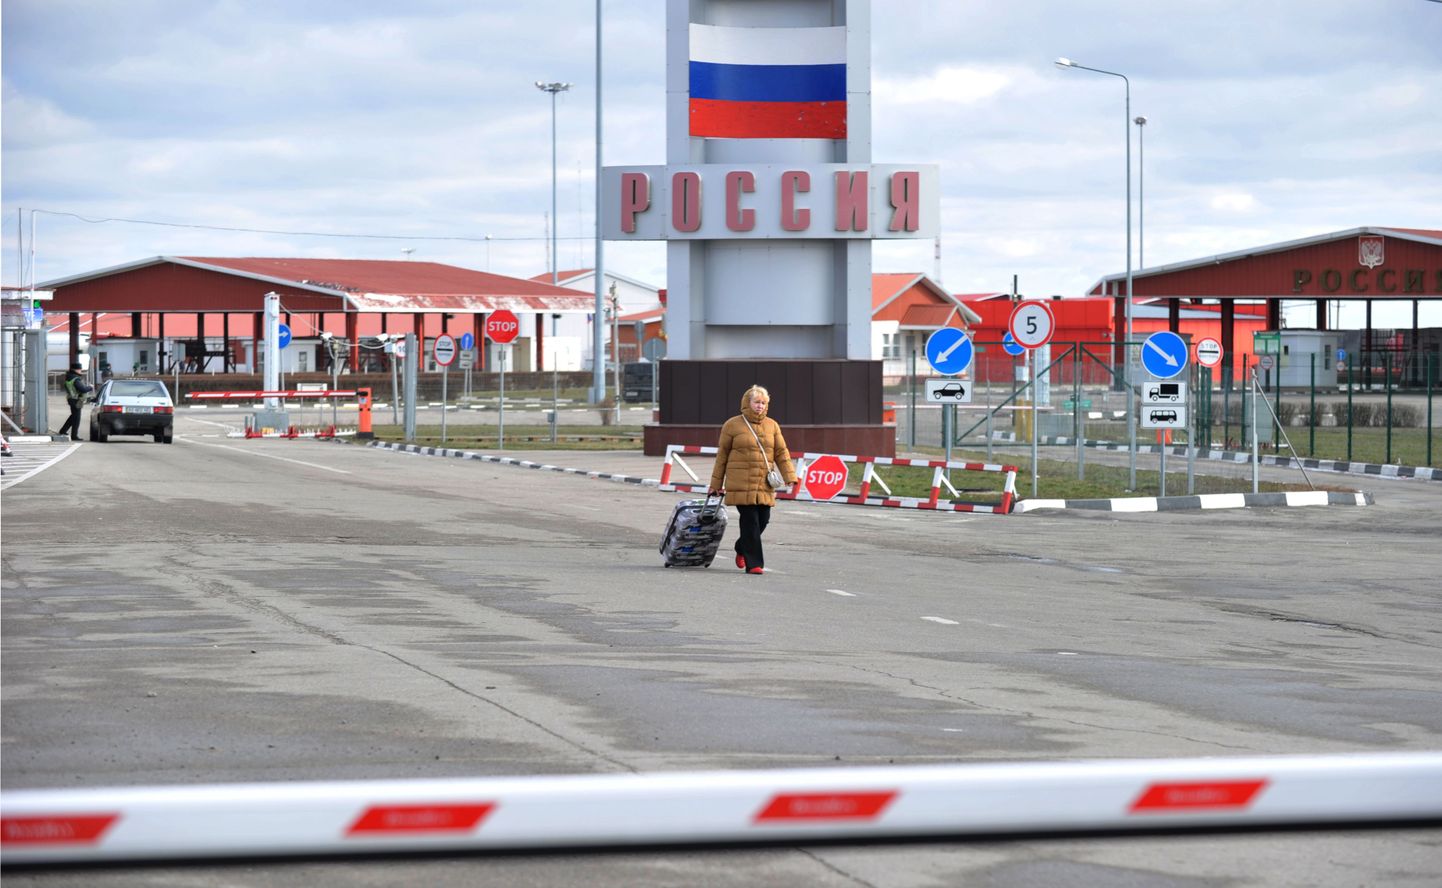 Vene piirivalvurid küsivad näha piiriületajate nutiseadmeid ja küsivad nende suhtumist Ukrainasse.